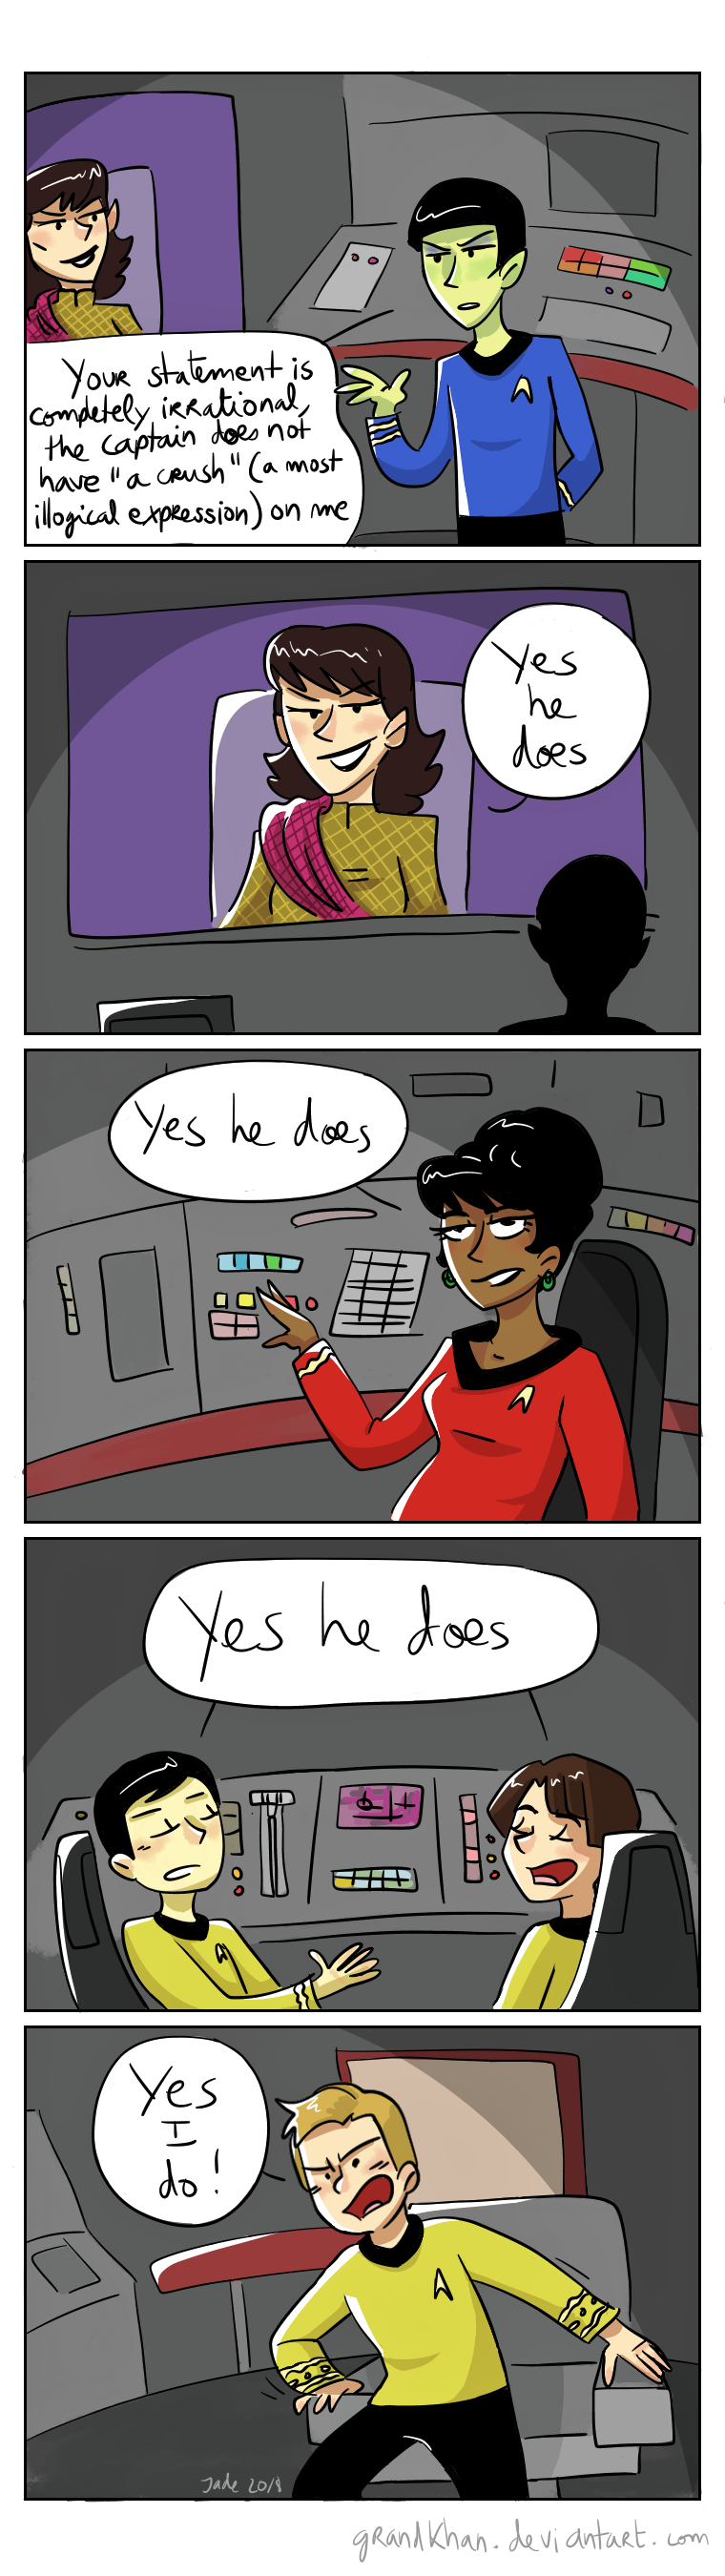 Star Trek - Strange New dumb comics #11 : Crush by Grandkhan on DeviantArt